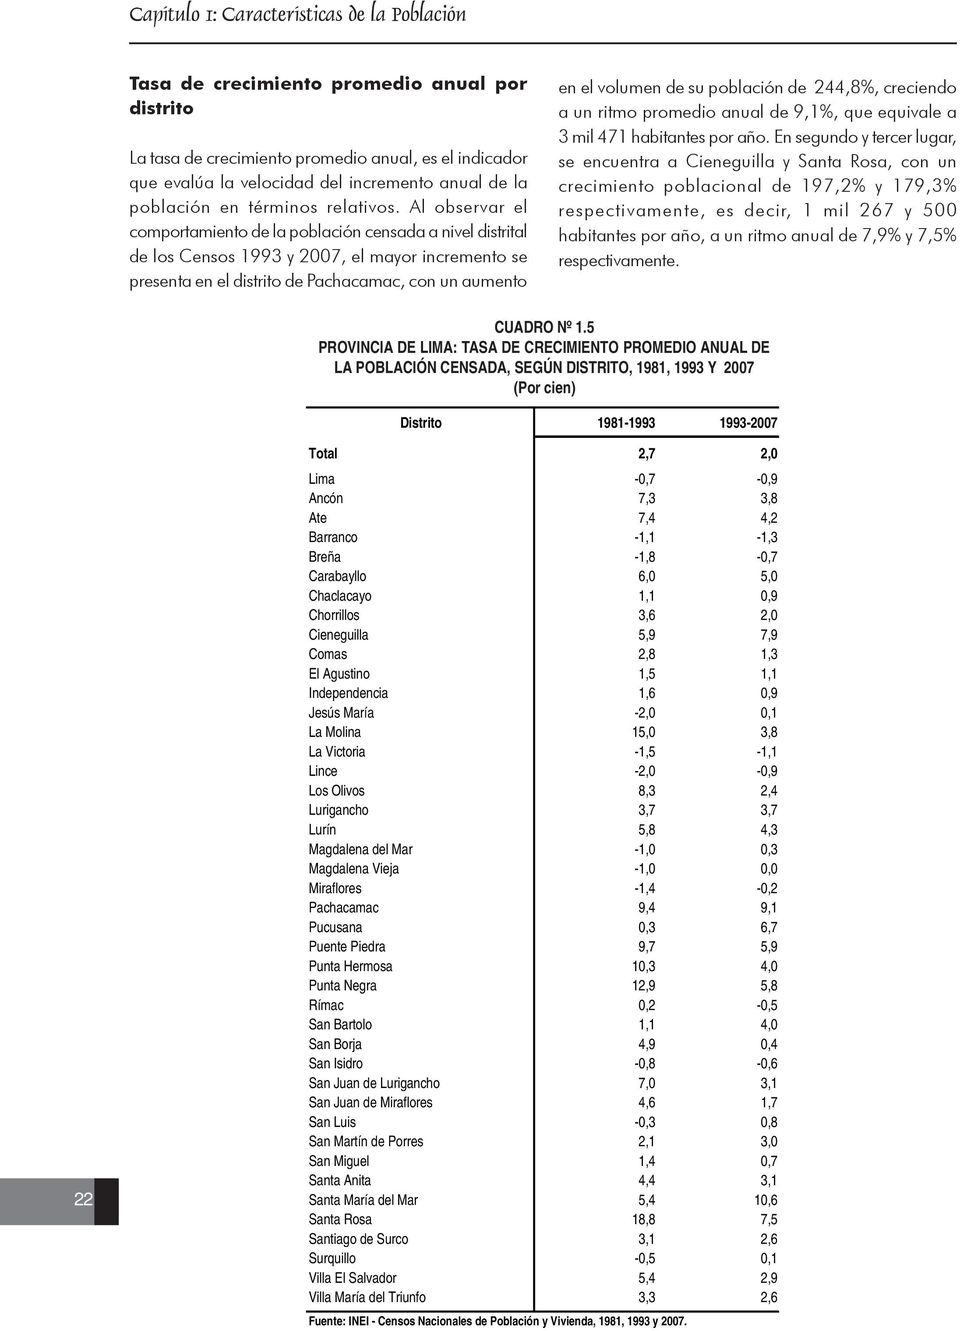 Al observar el comportamiento de la población censada a nivel distrital de los Censos 1993 y 2007, el mayor incremento se presenta en el distrito de Pachacamac, con un aumento en el volumen de su